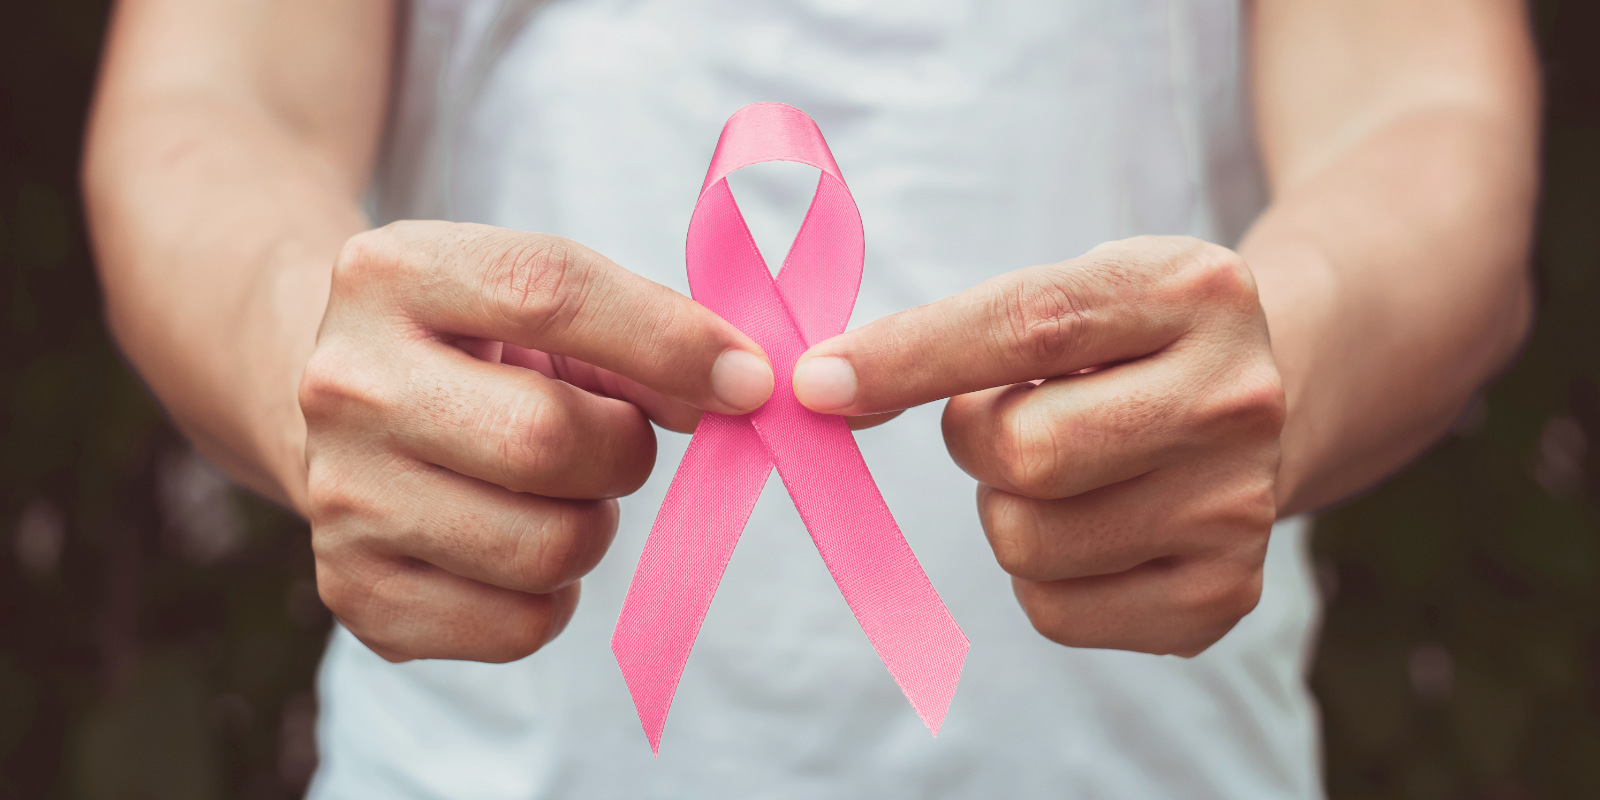 Brustkrebs bei Männern: Wer besonders gefährdet ist